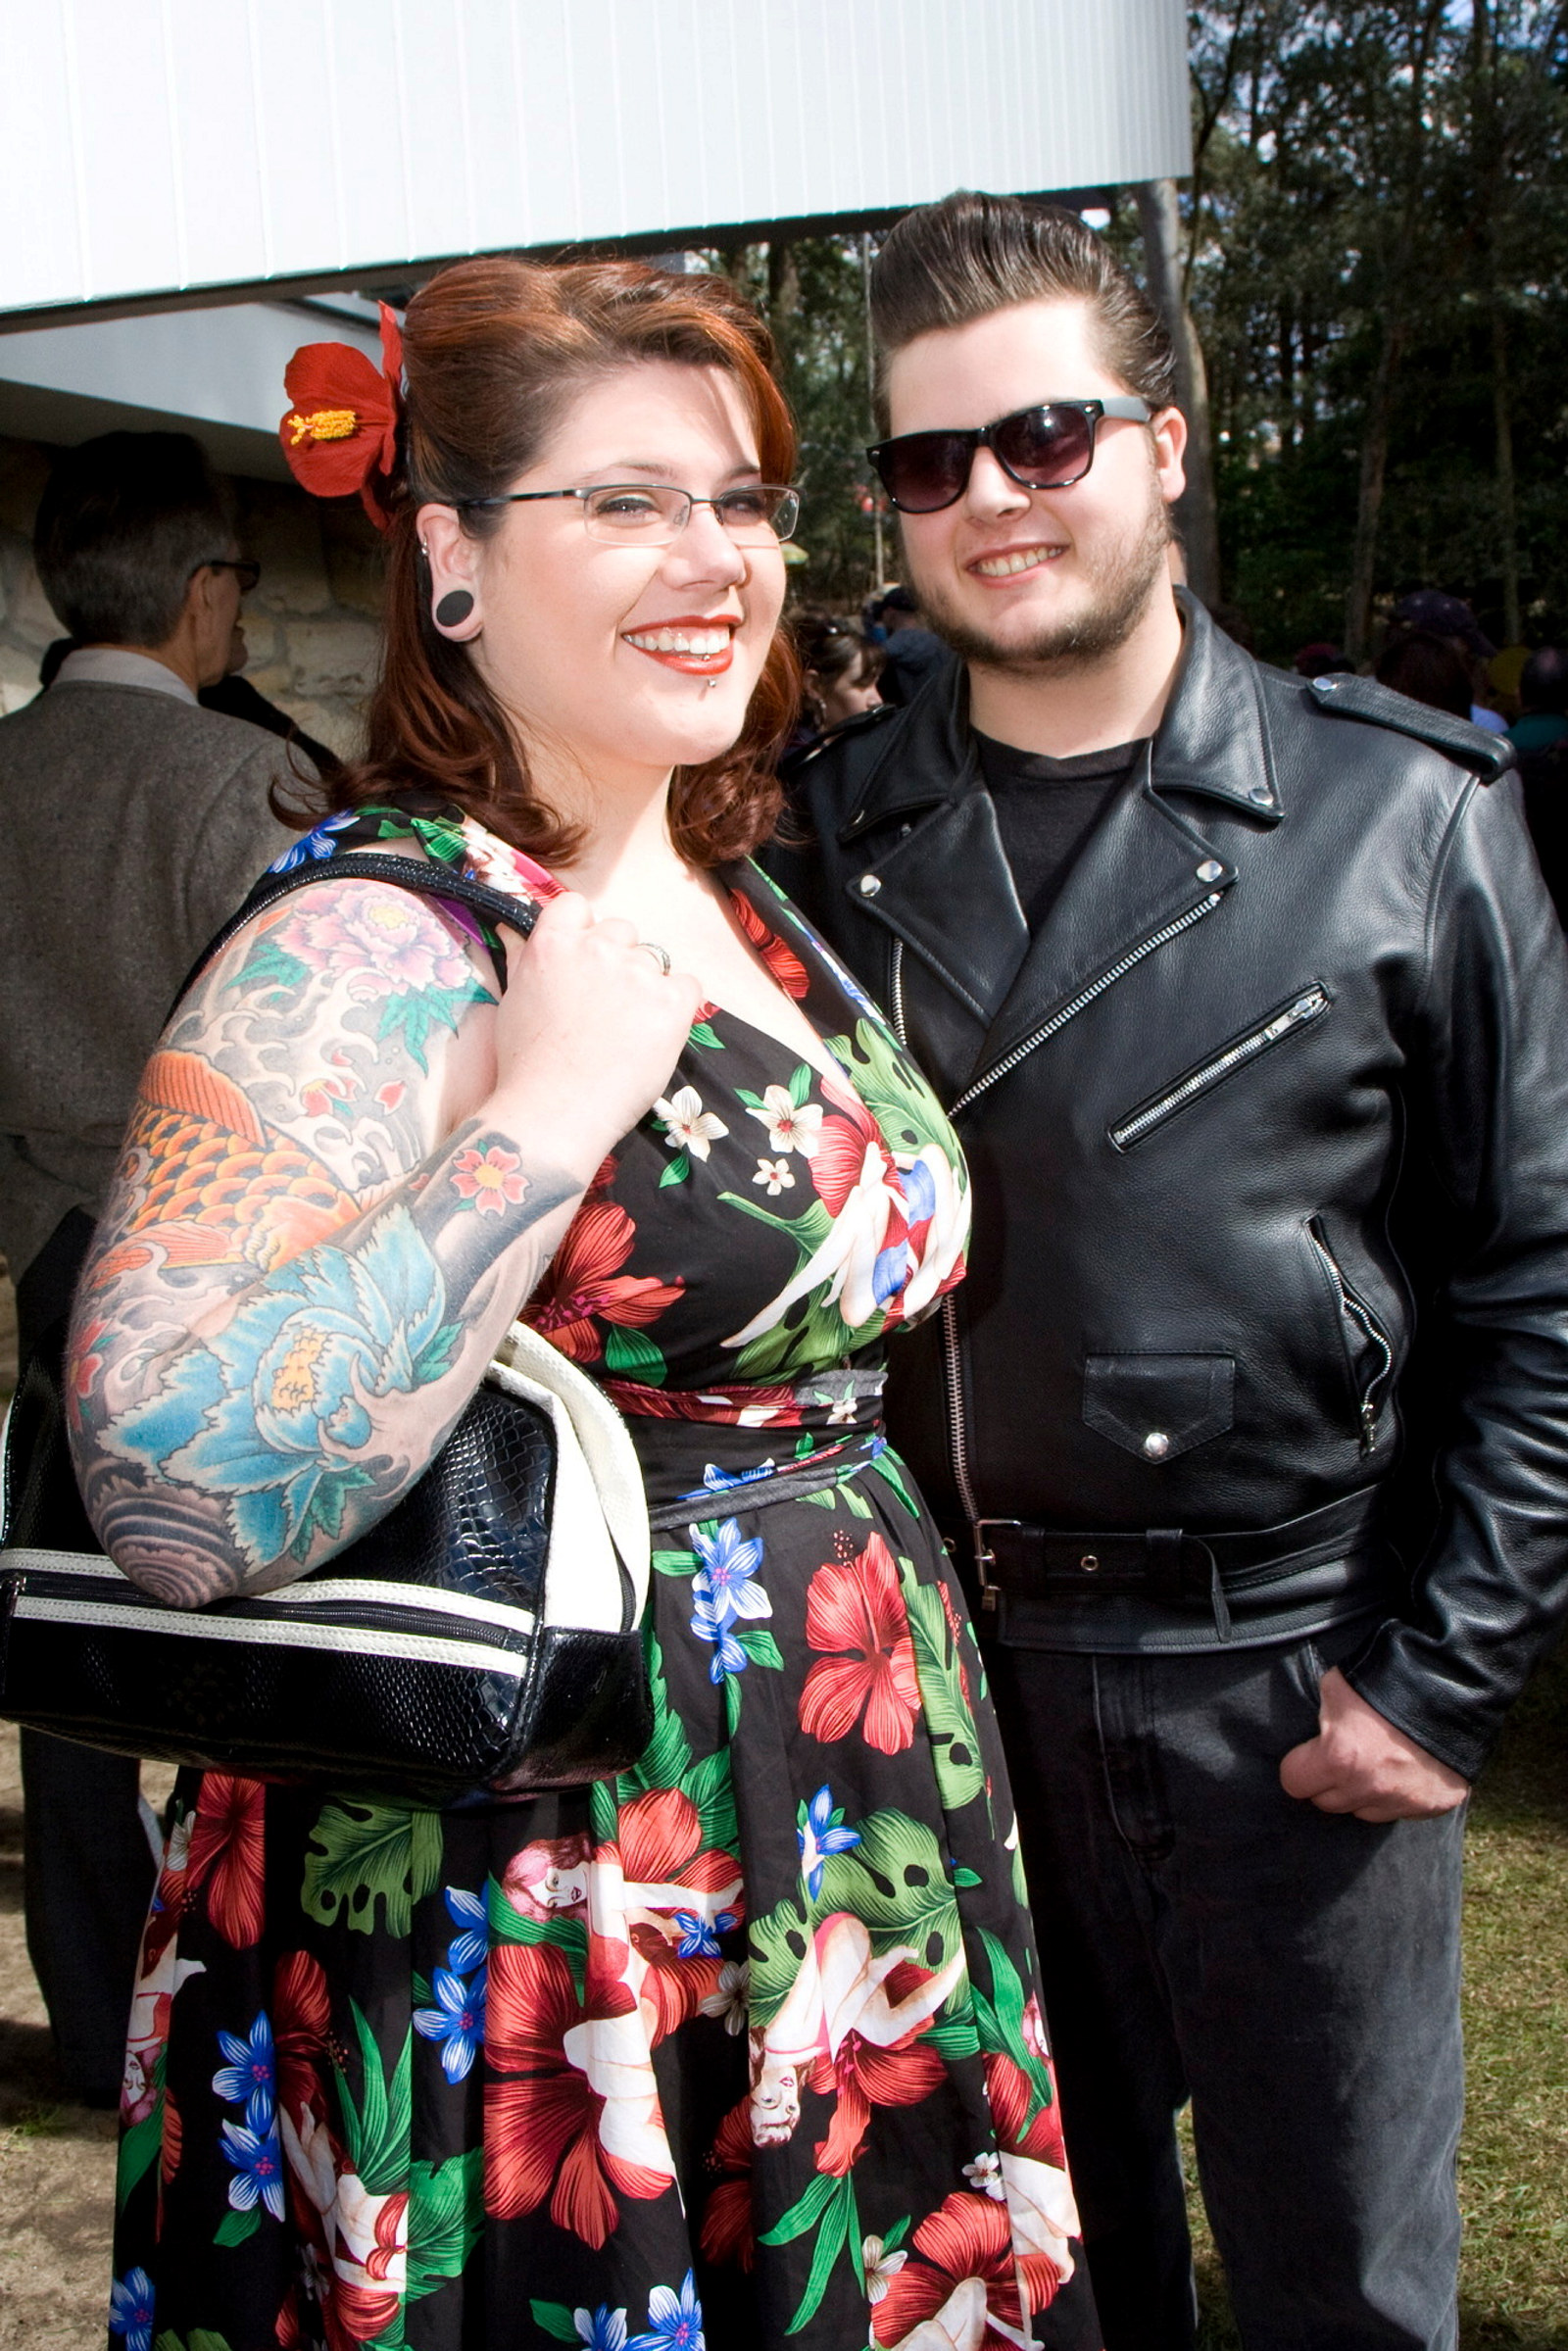 Chris & Danielle Stroinec at the Fifties Fair